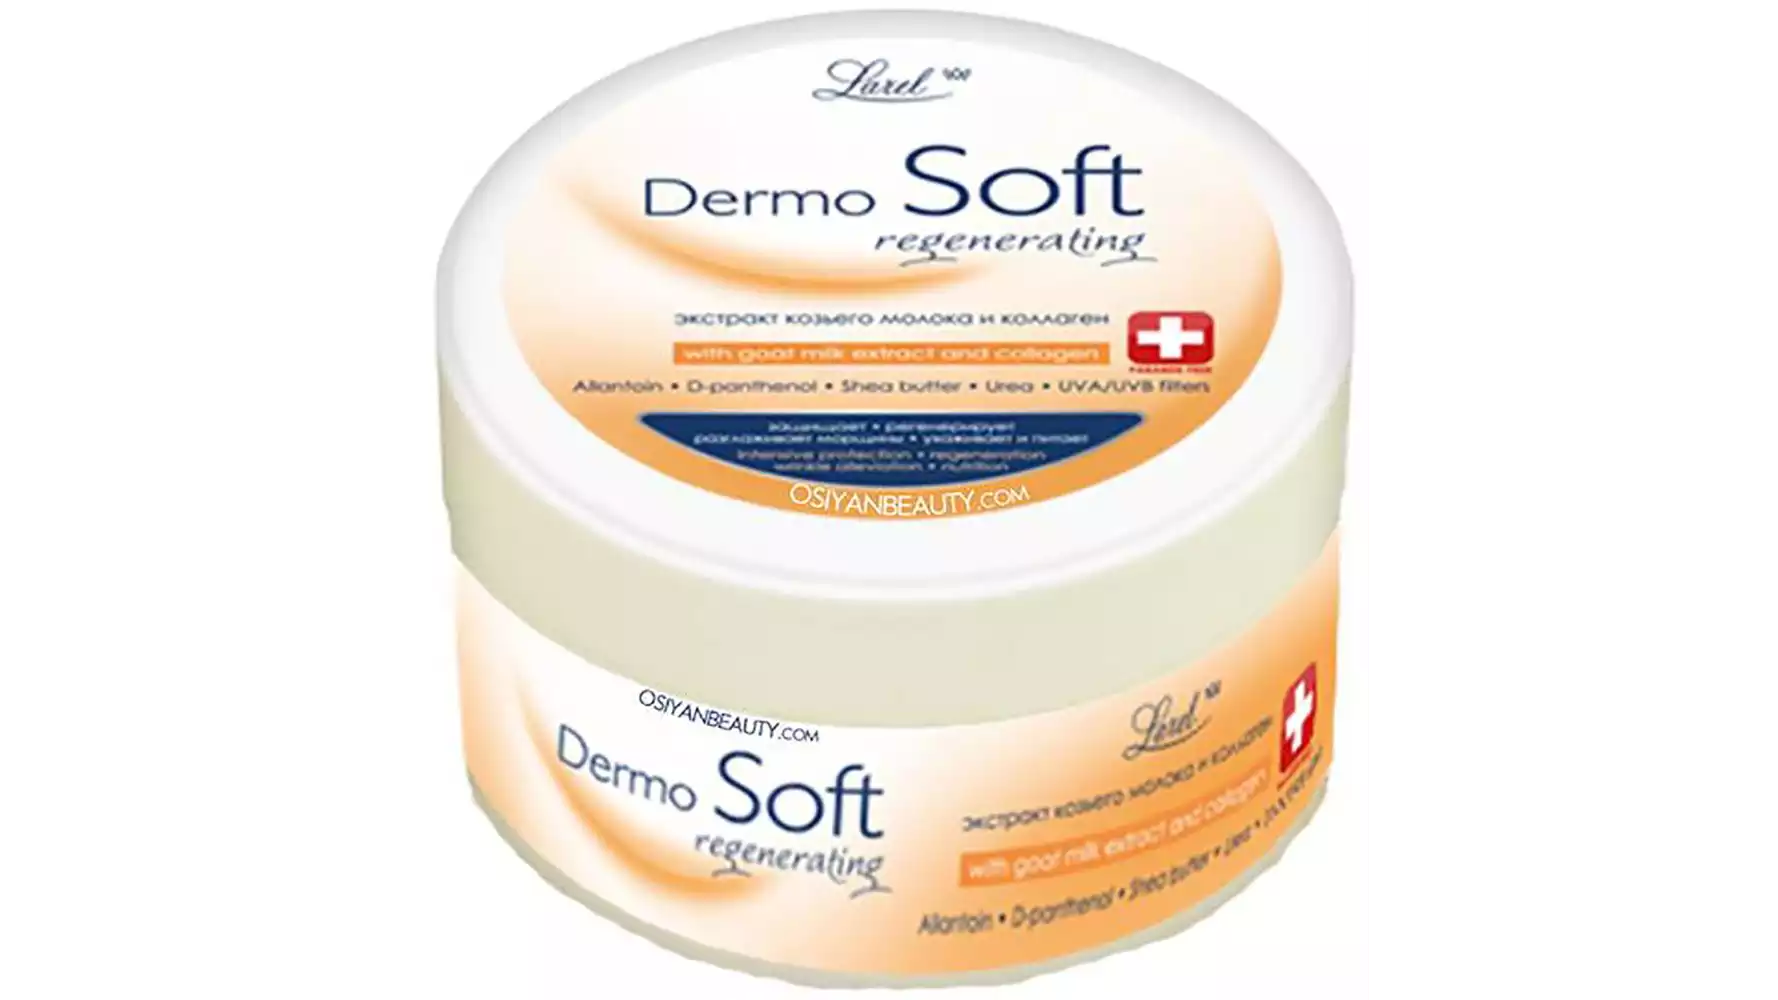 Larel Dermosoft-Regenerating Cream(Made In Europe) (200ml)